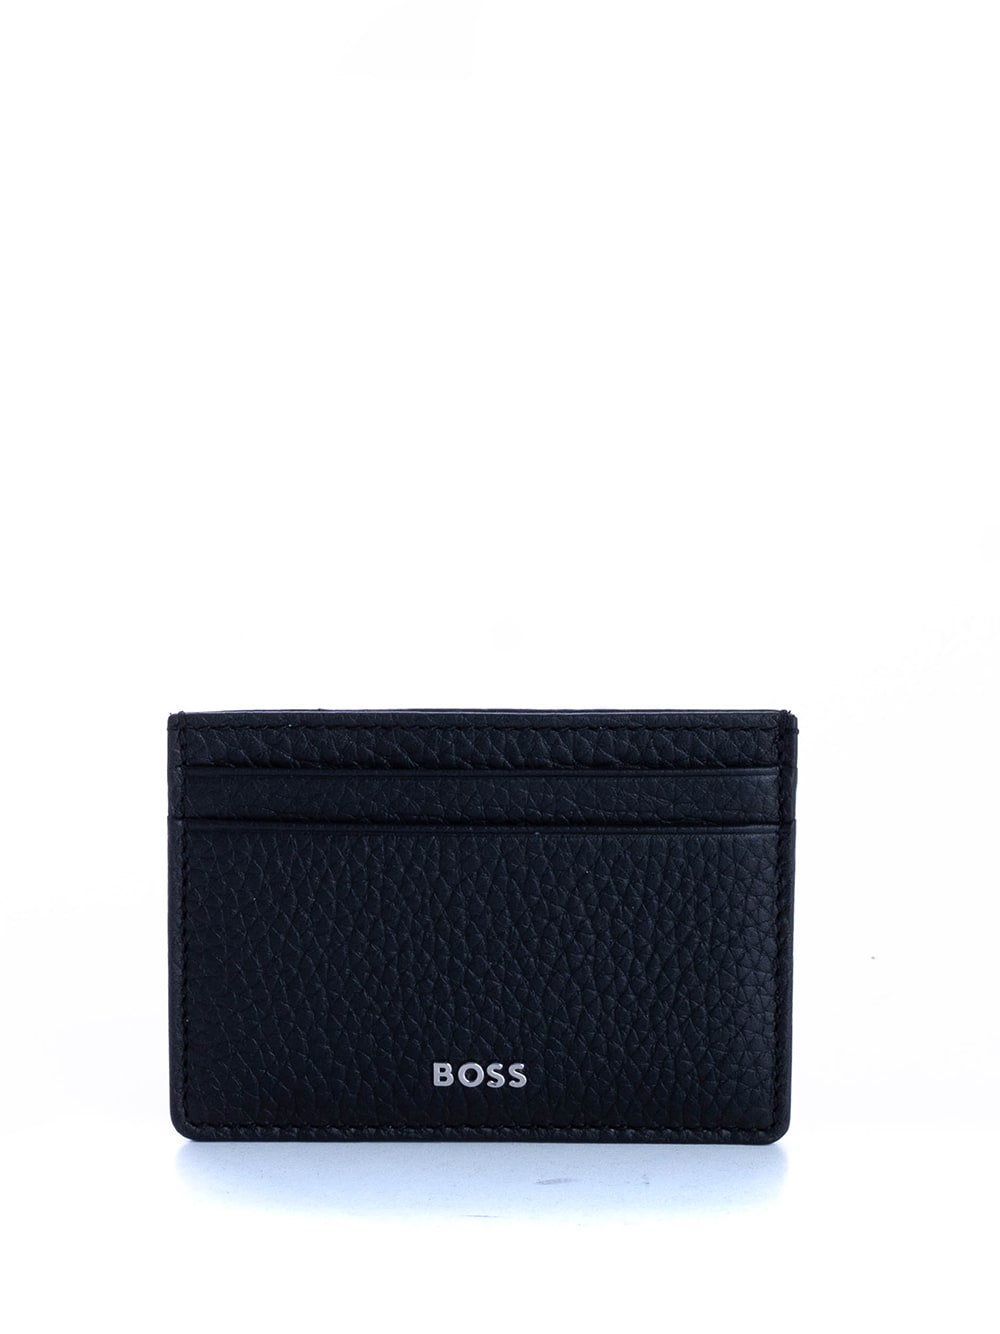 Hugo Boss Boss Leather Wallet crosstown Money Clip